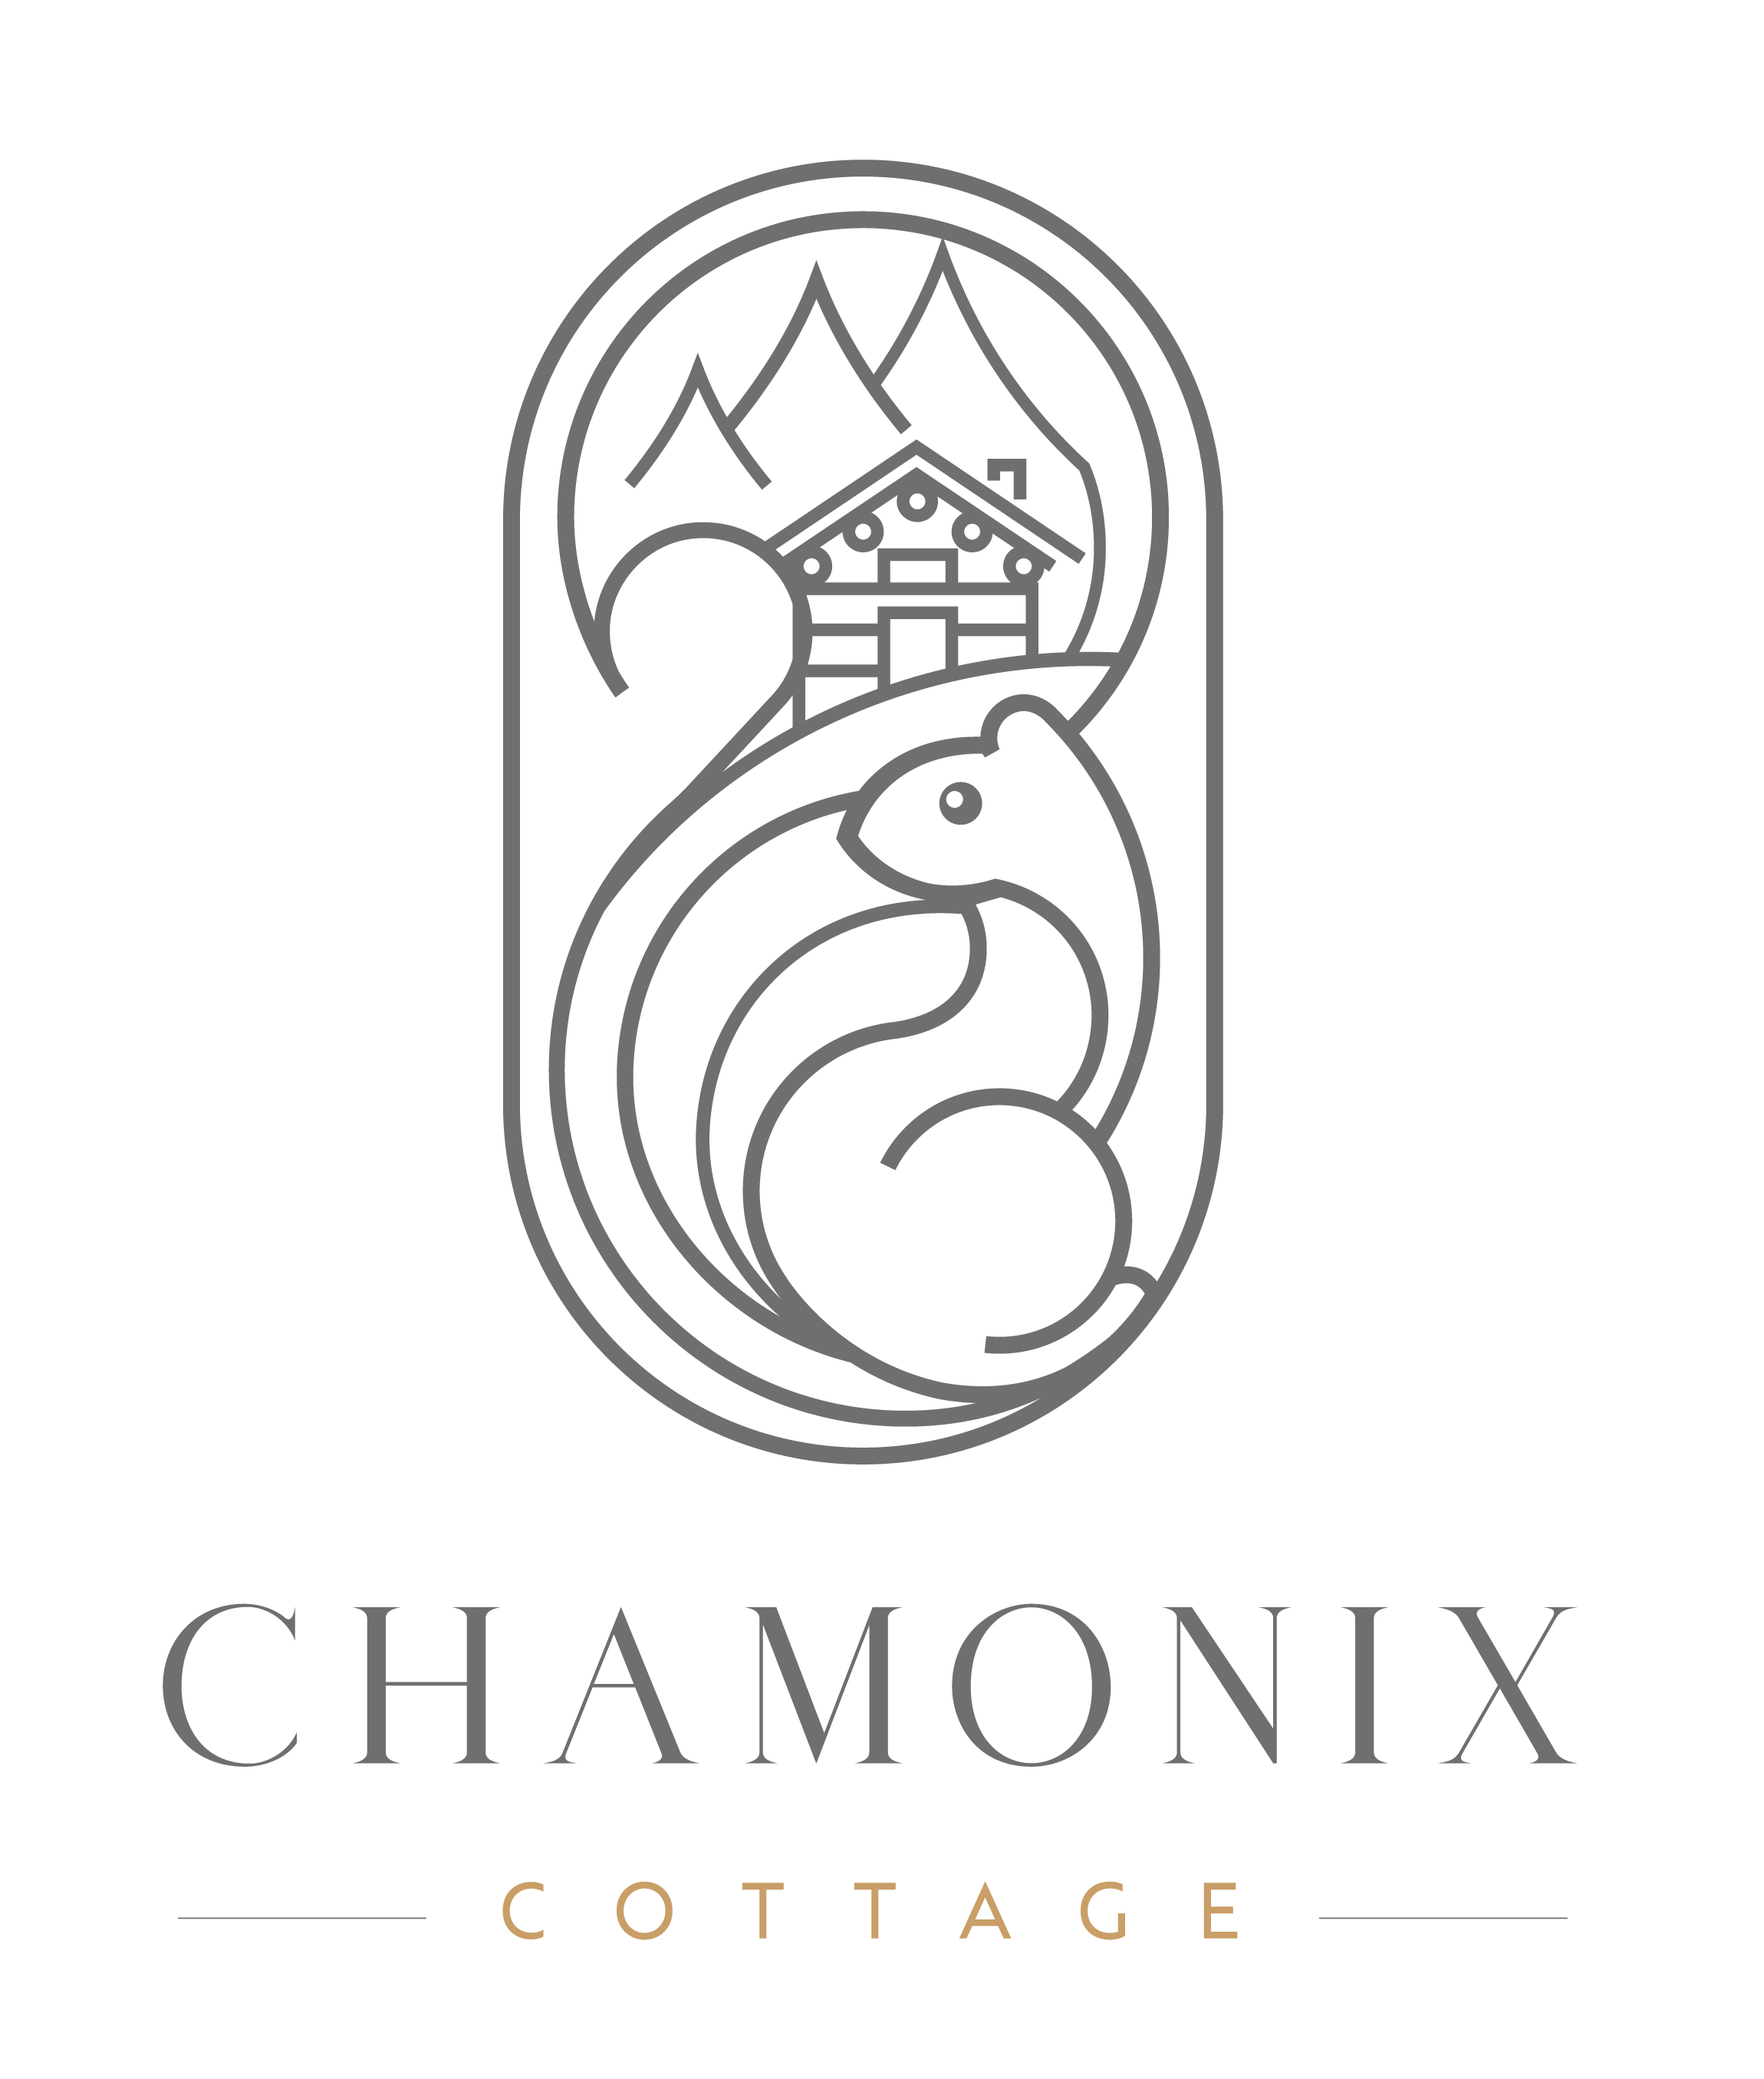 Chamonix Cottage | Bonjour tout le monde ! - Chamonix Cottage